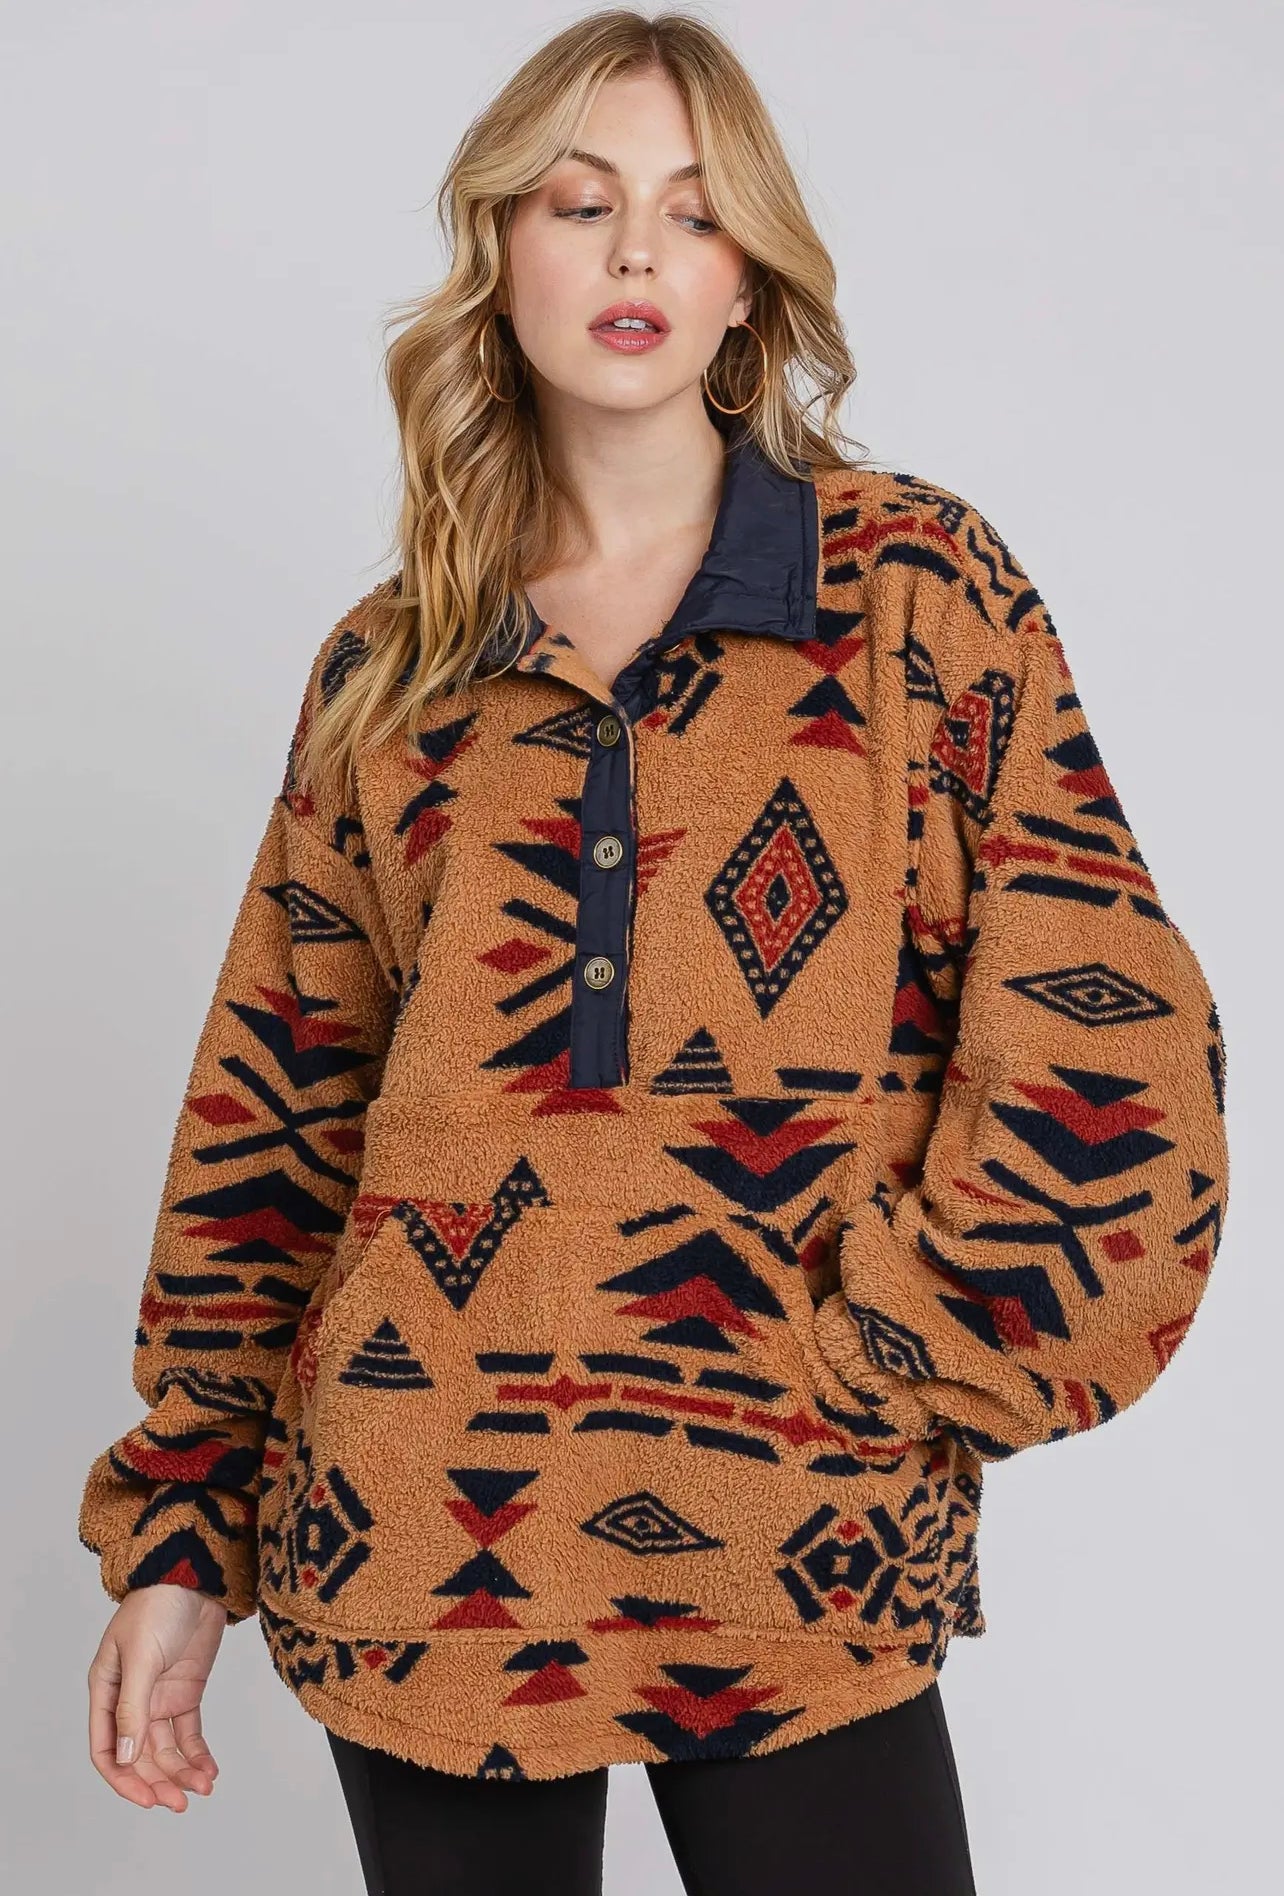 Aztec Fleece Pullover